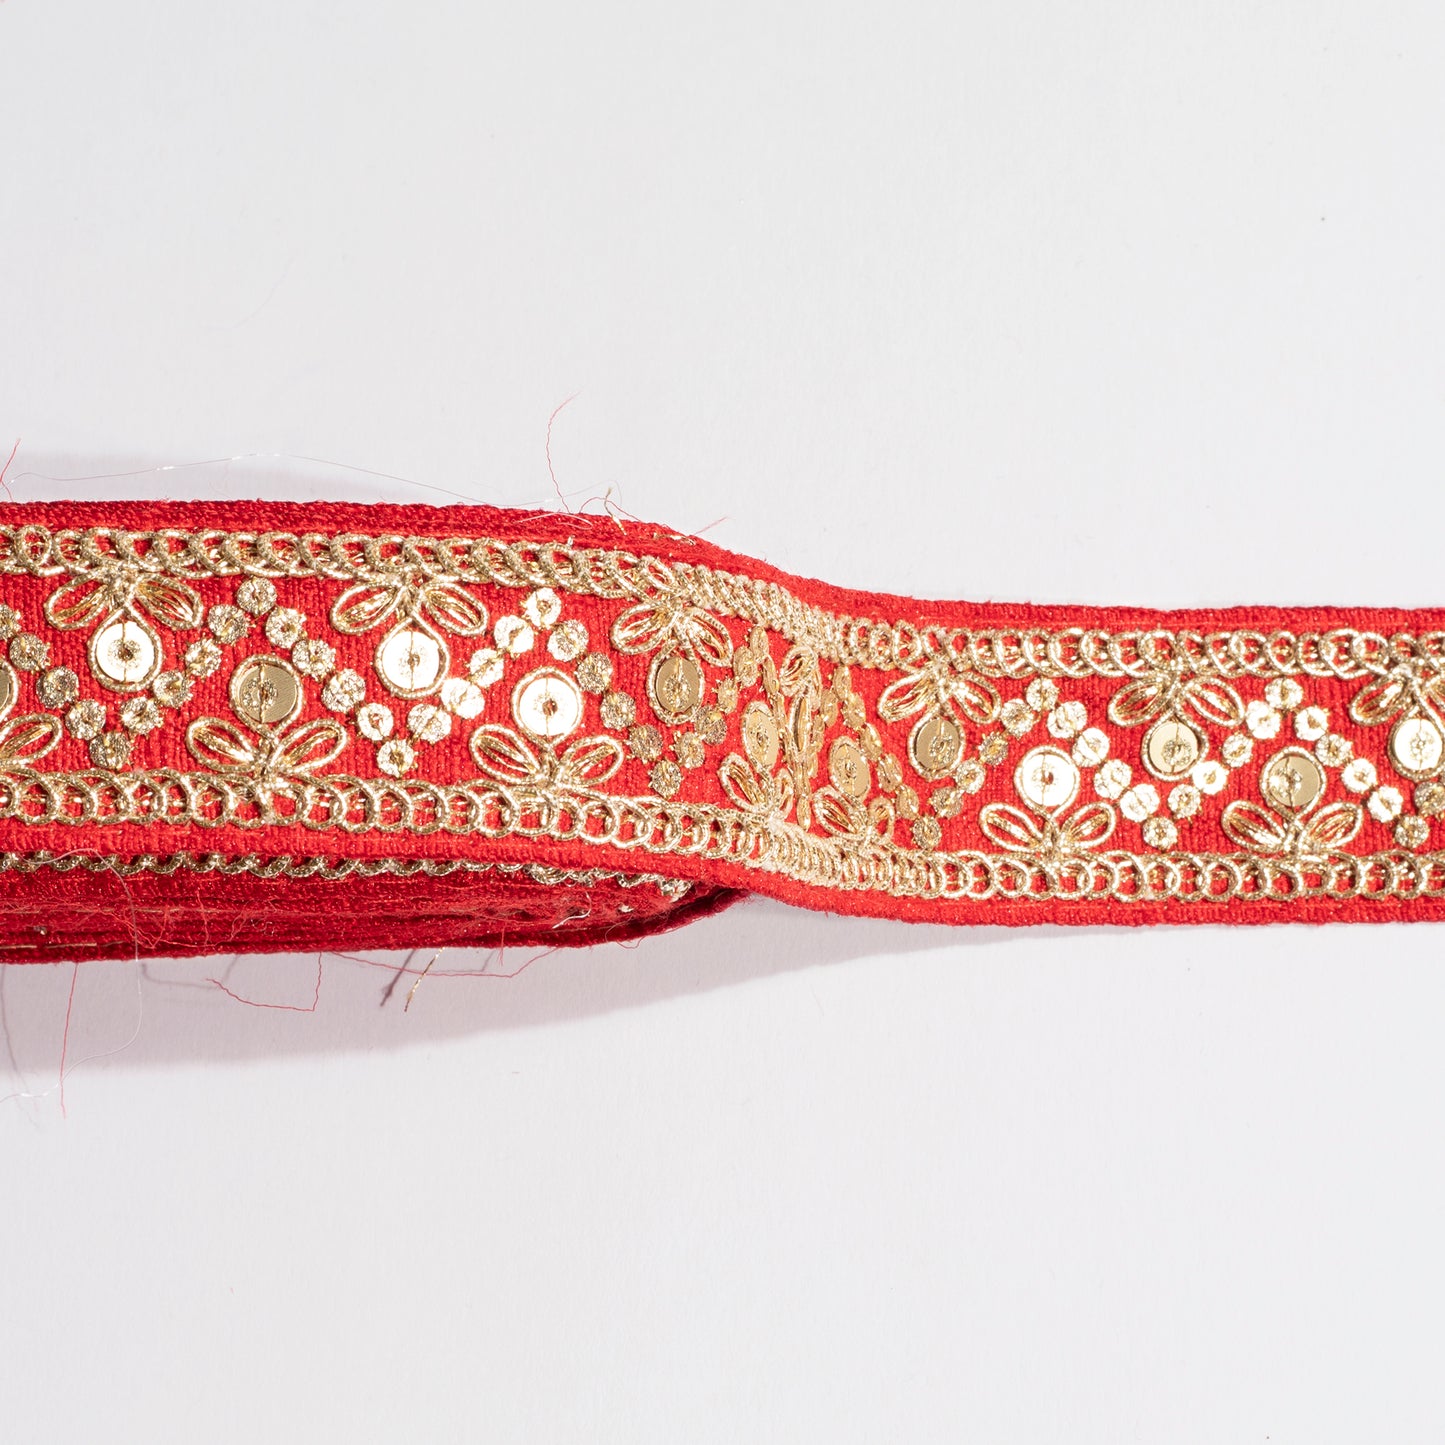 Zardosi Work Weaving Magic on Red Fancy Lace (9 Mtr)